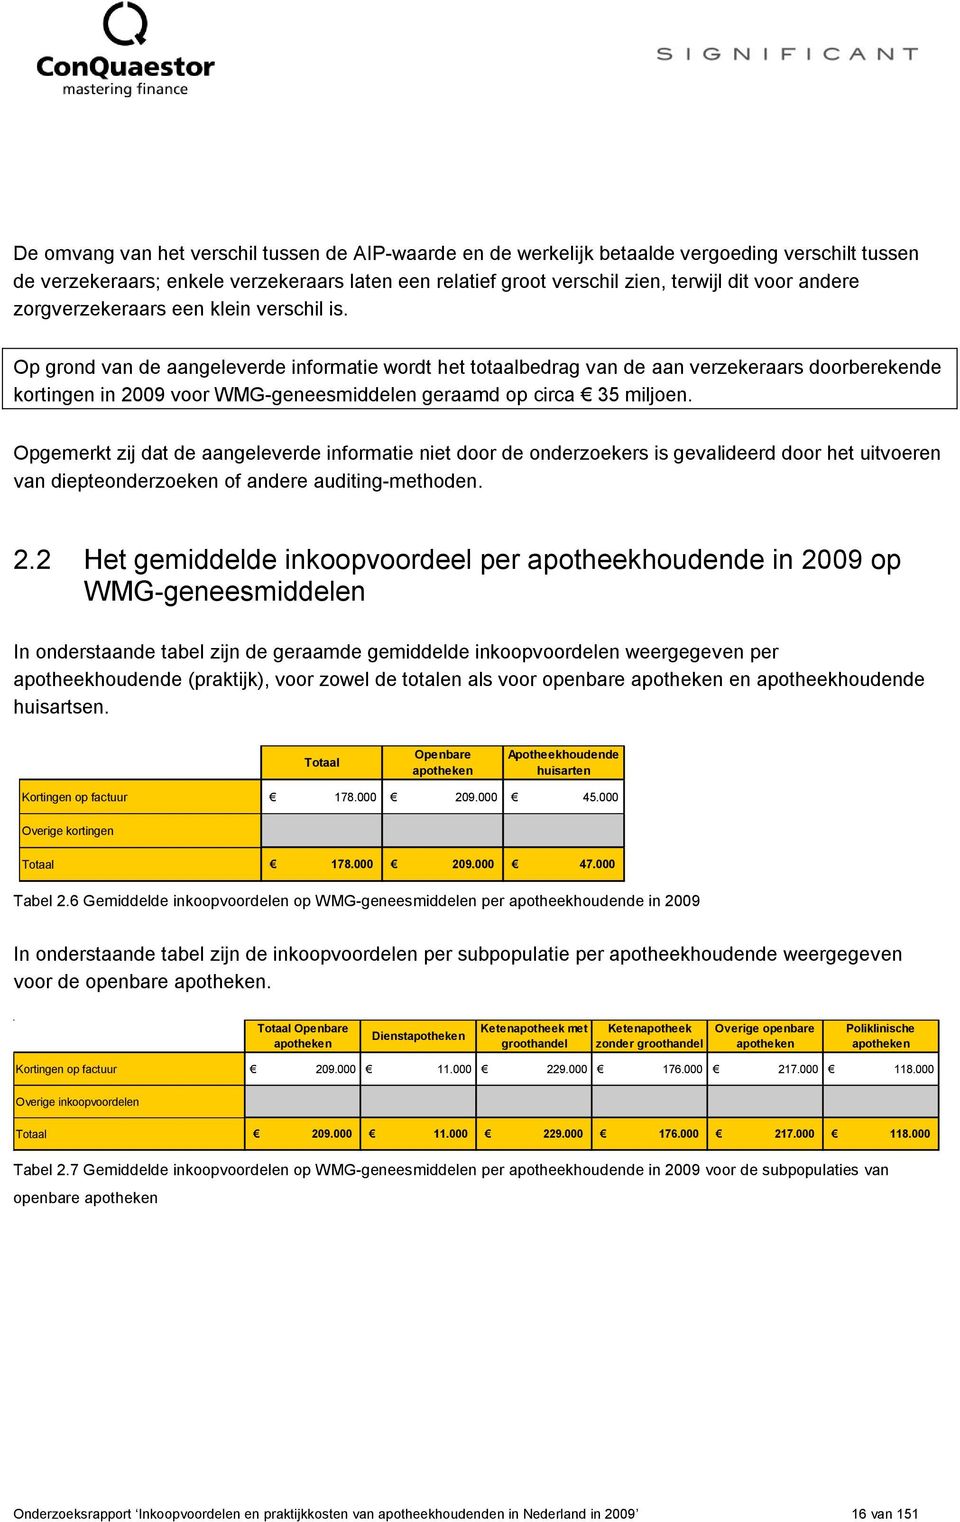 Op grond van de aangeleverde informatie wordt het totaalbedrag van de aan verzekeraars doorberekende kortingen in 2009 voor WMG-geneesmiddelen geraamd op circa 35 miljoen.